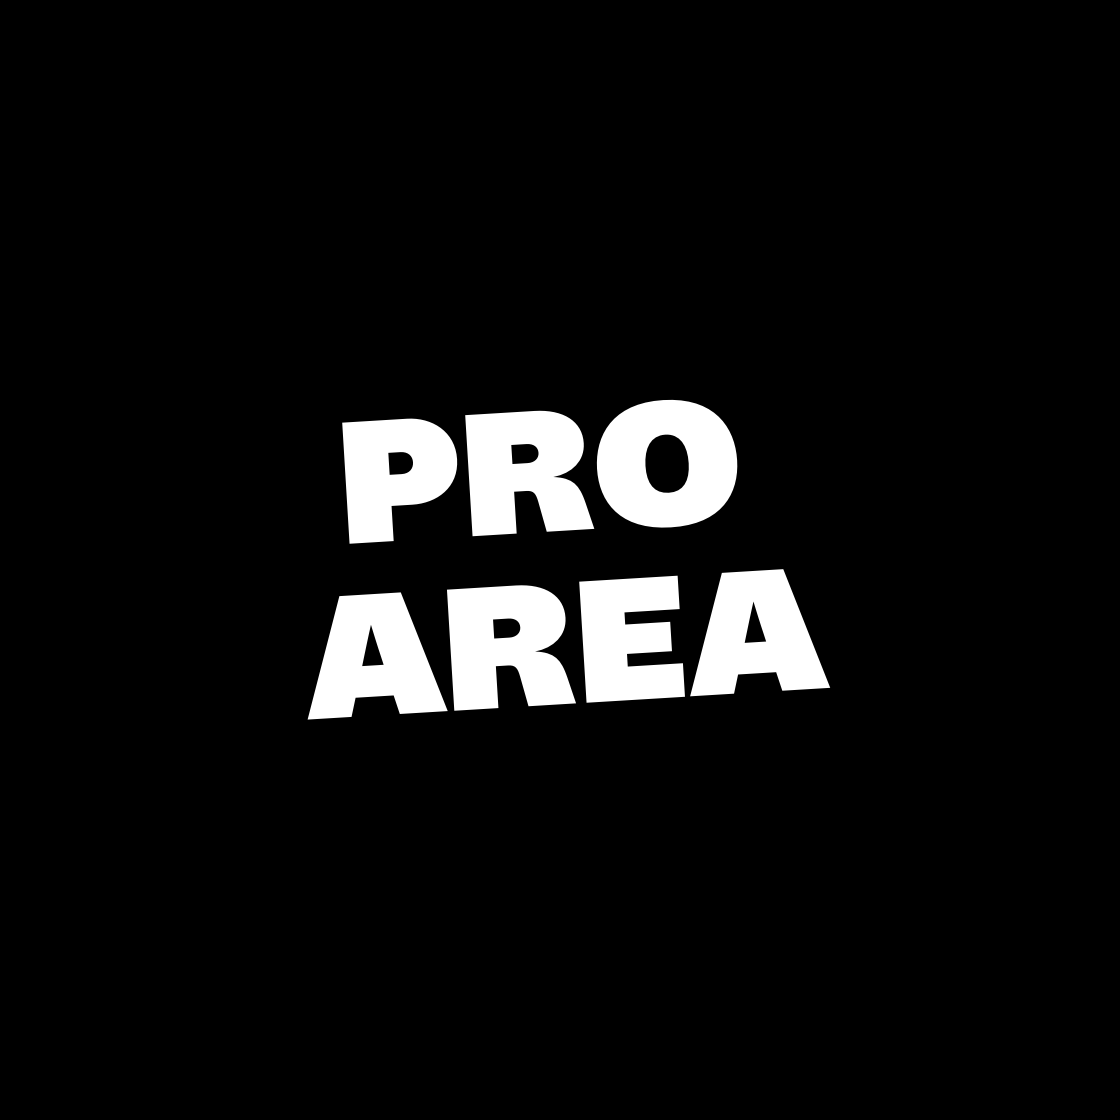 Pro Area